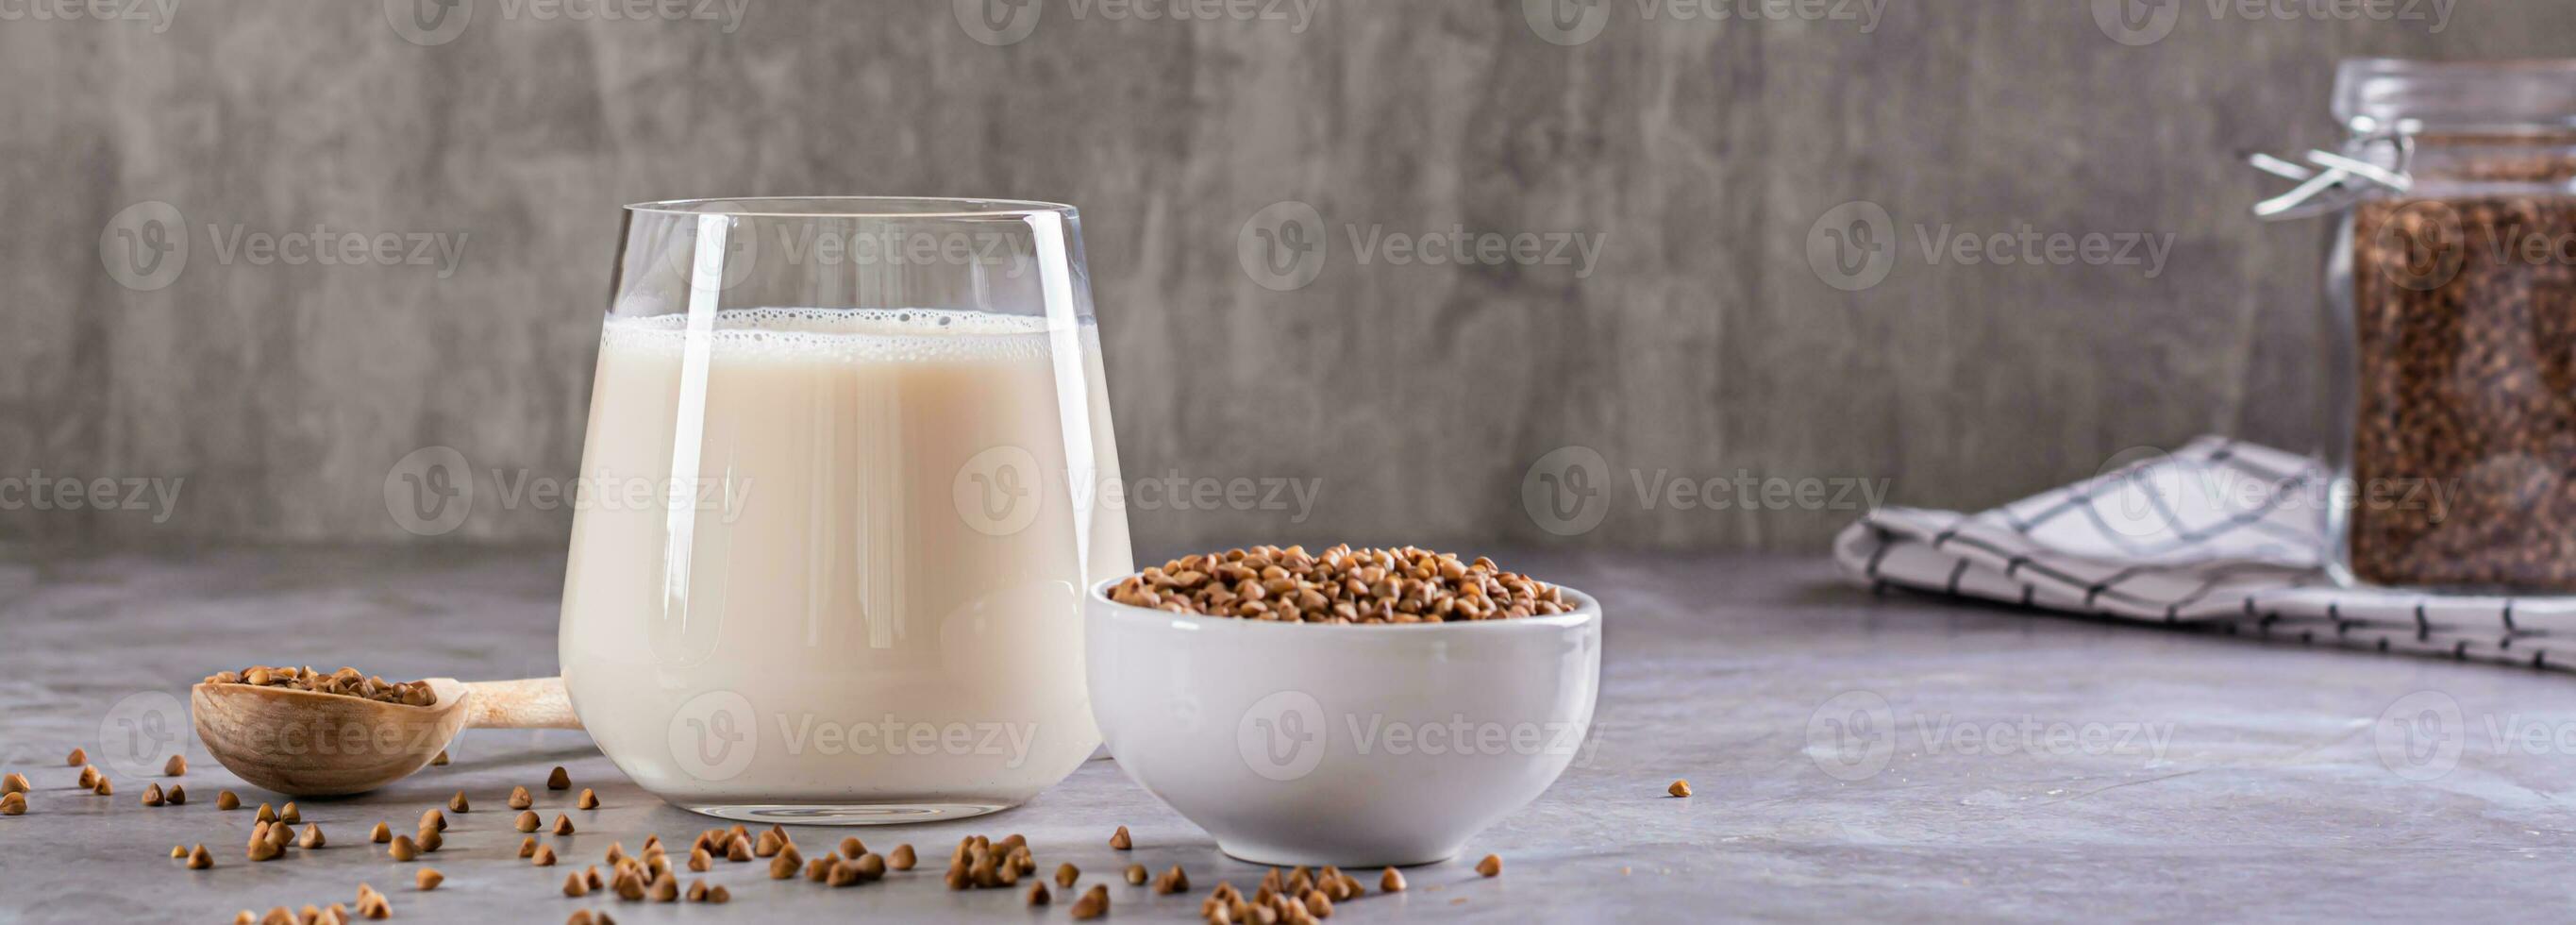 vegan mjölkfritt bovete mjölk i en glas och spannmål i en skål på de tabell webb baner foto